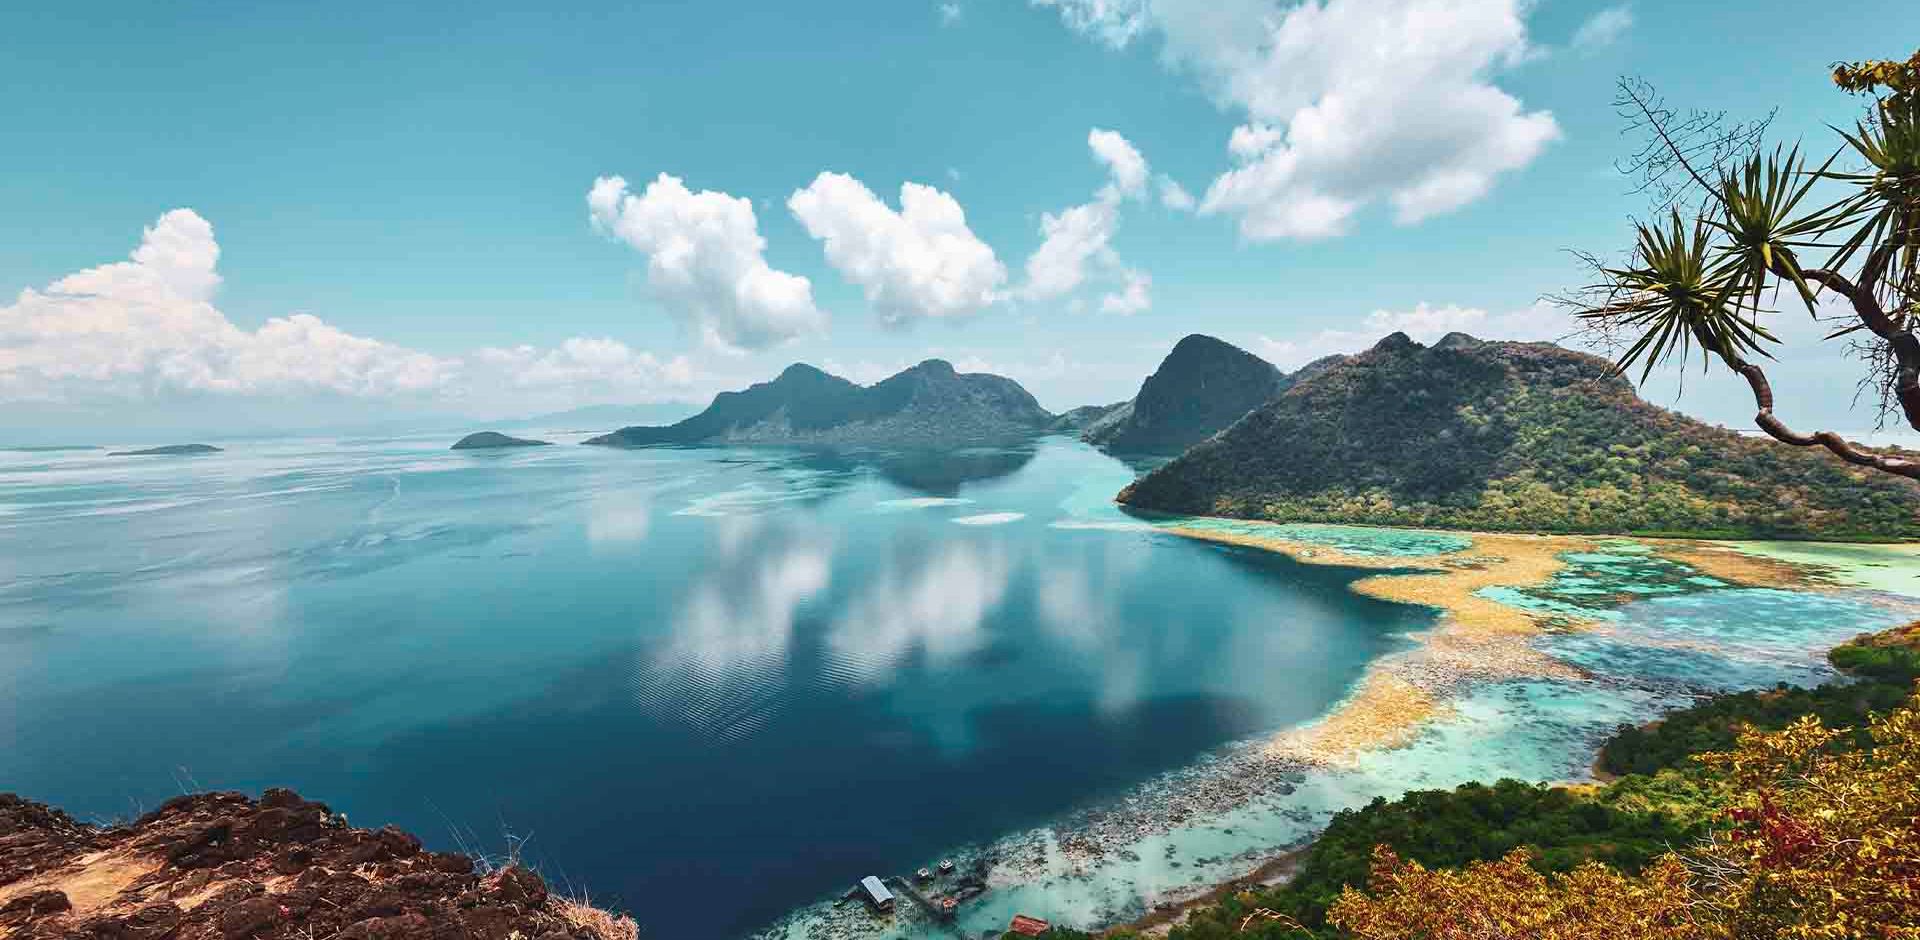 Malaysia, Borneo, Sabah Bohey Dulang med udsigt over landskab med bjerge og vand